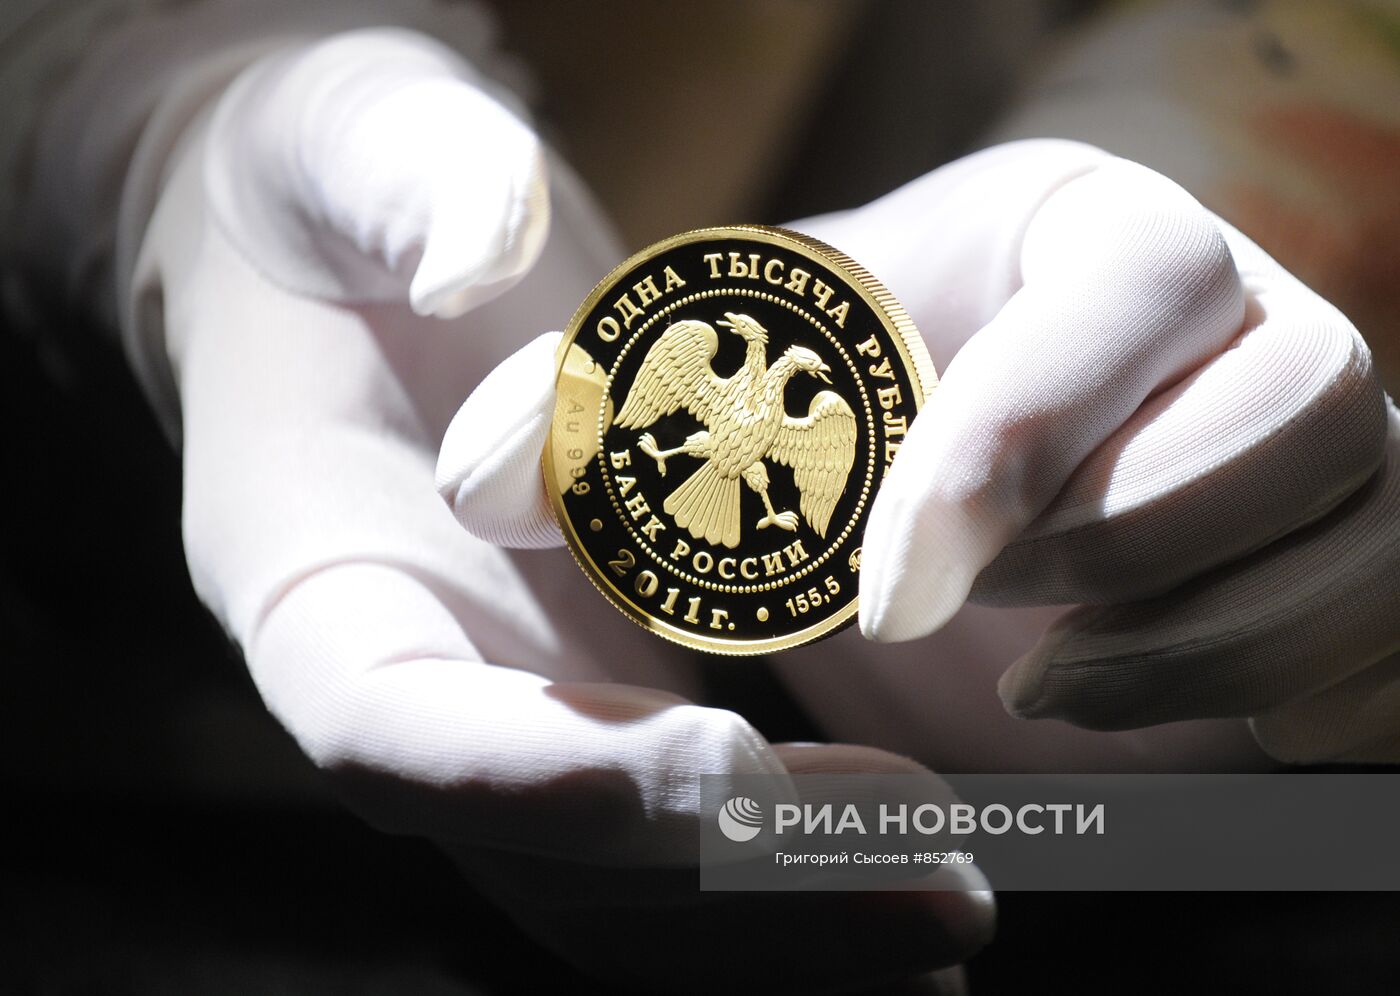 ЦБ РФ выпустил памятную монету номиналом одна тысяча рублей